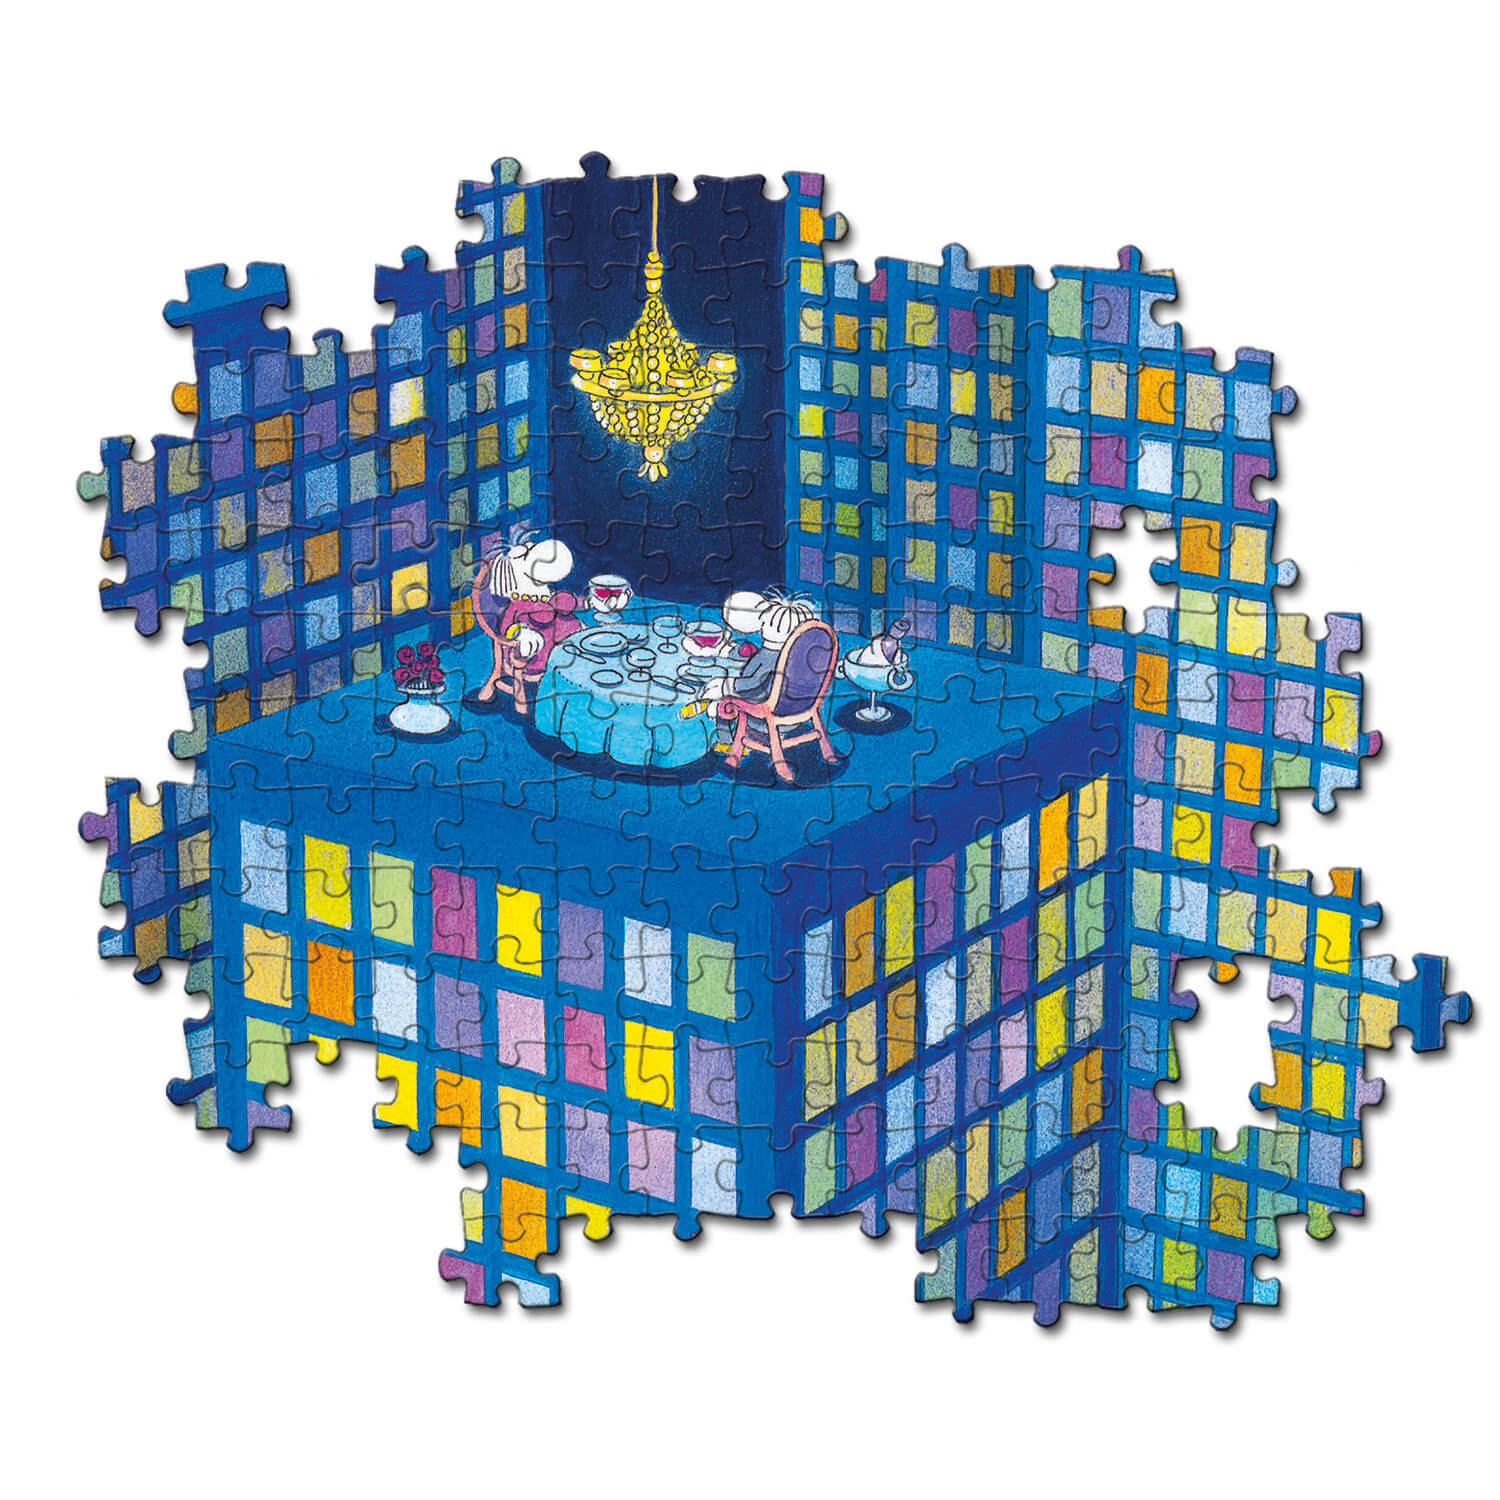 Puzzle 1000 pièces : Impossible puzzle : Mordillo - Clementoni - Rue des  Puzzles